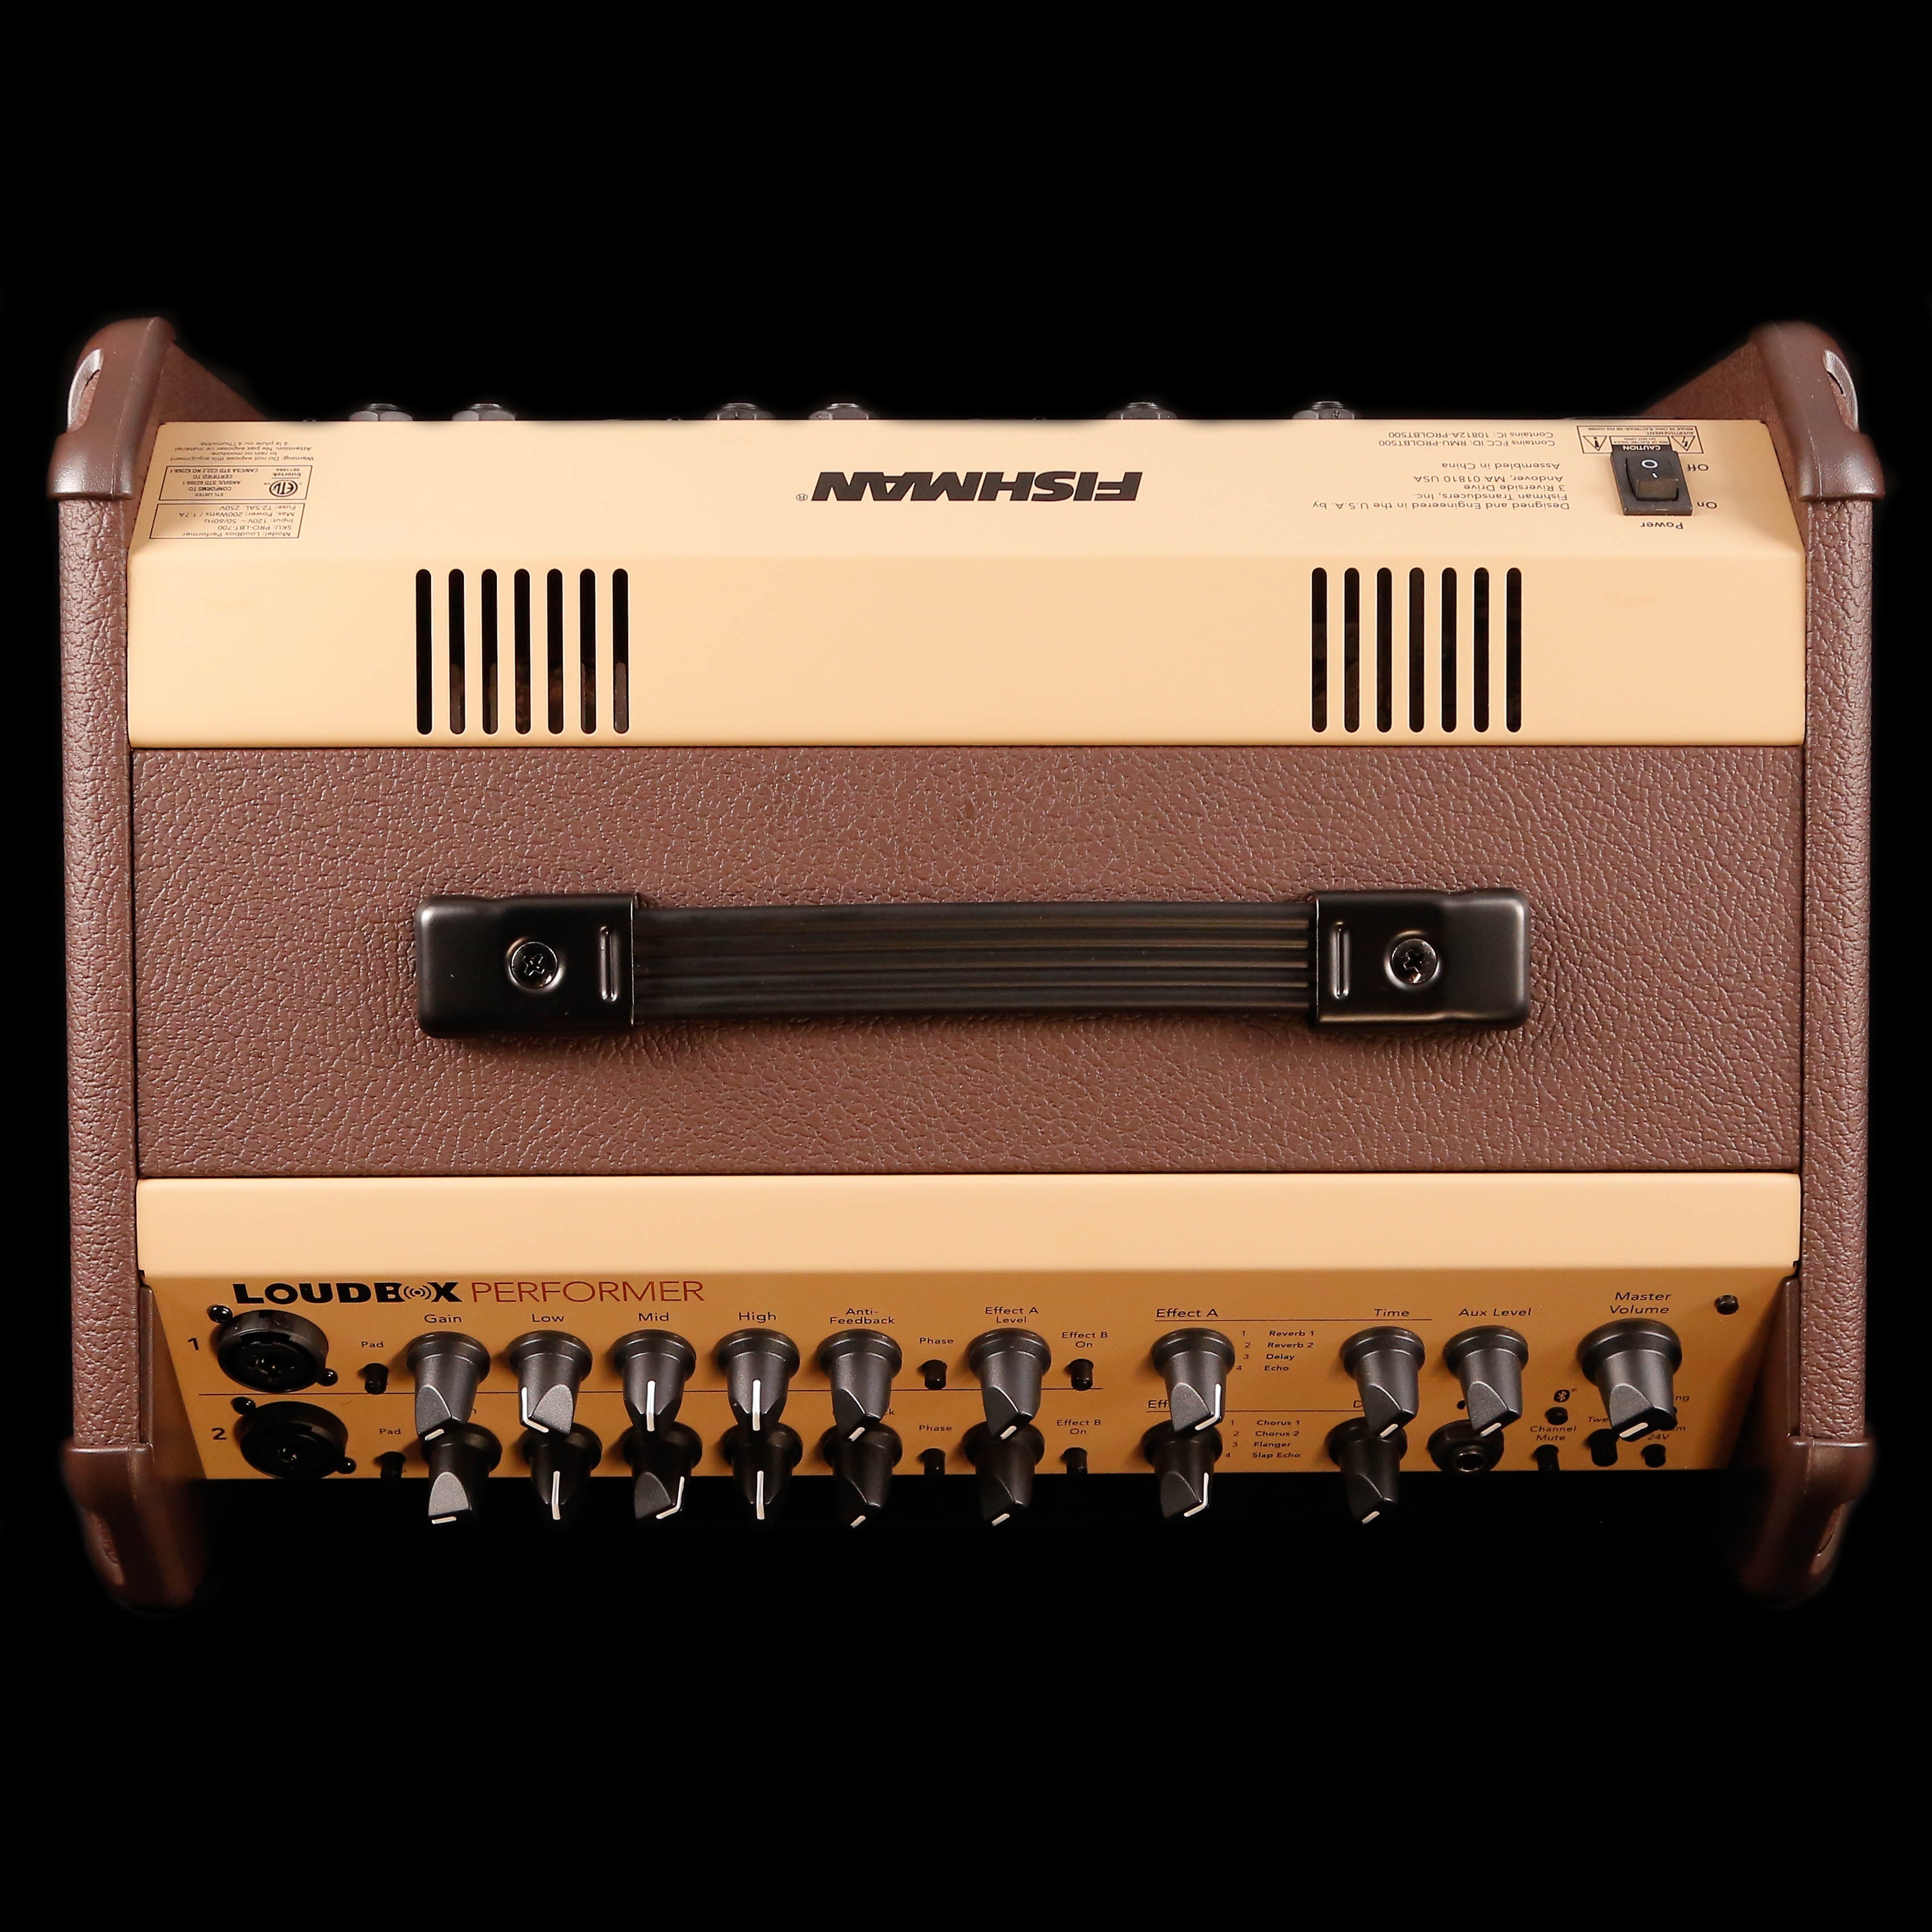 Fishman PRO-LBT-700 Loudbox Performer Bluetooth - 180 watts